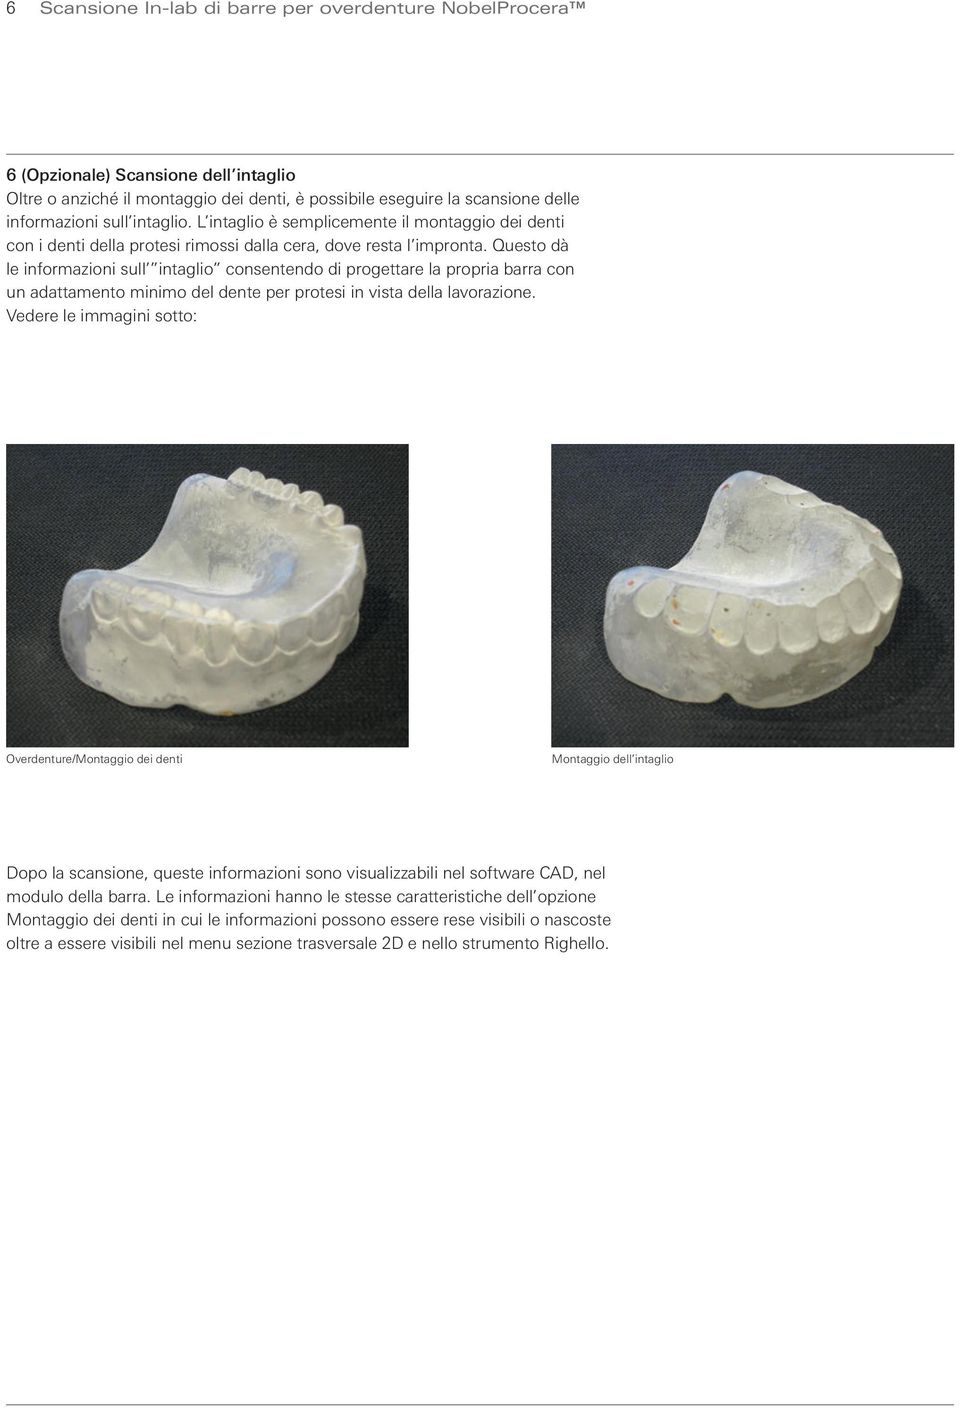 Questo dà le informazioni sull intaglio consentendo di progettare la propria barra con un adattamento minimo del dente per protesi in vista della lavorazione.